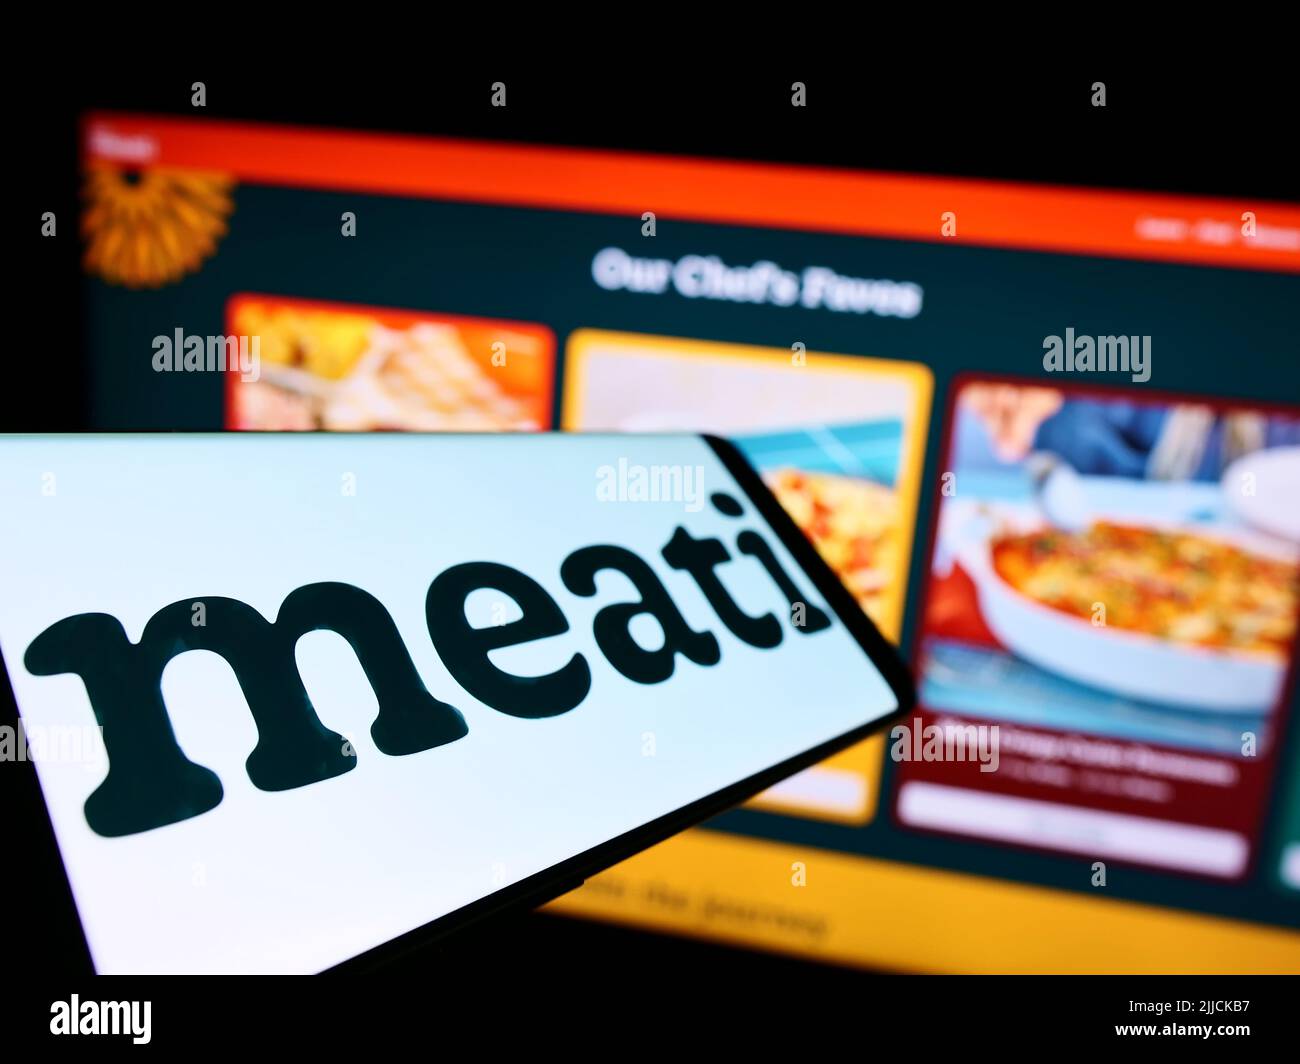 Telefono cellulare con logo della società americana di nutrizione meati Inc. (Meati Foods) sullo schermo di fronte al sito web. Mettere a fuoco sulla sinistra del display del telefono. Foto Stock